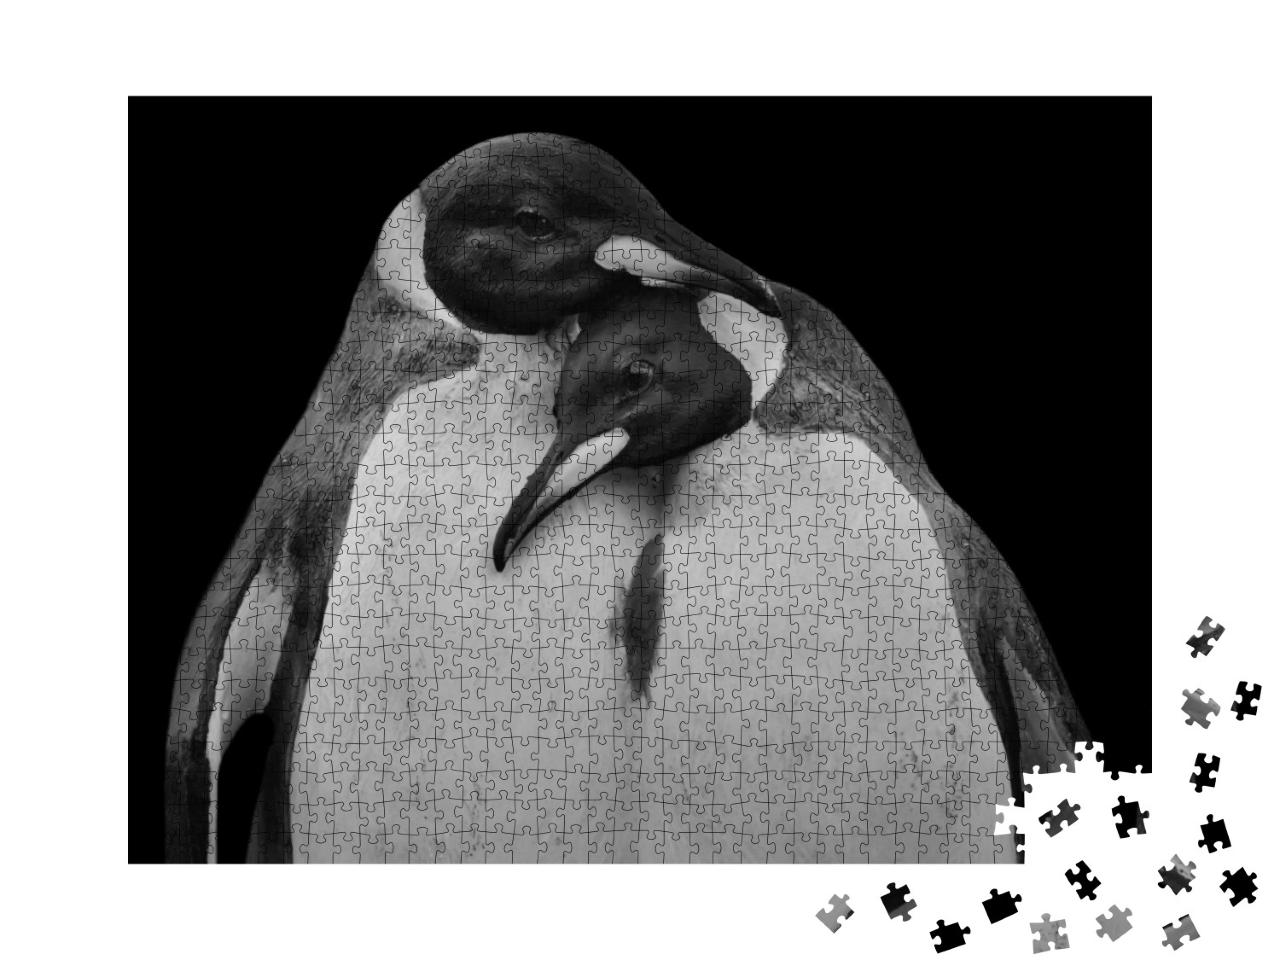 Puzzle 1000 Teile „Pinguin-Pärchen in inniger Umarmung, schwarz-weiß“